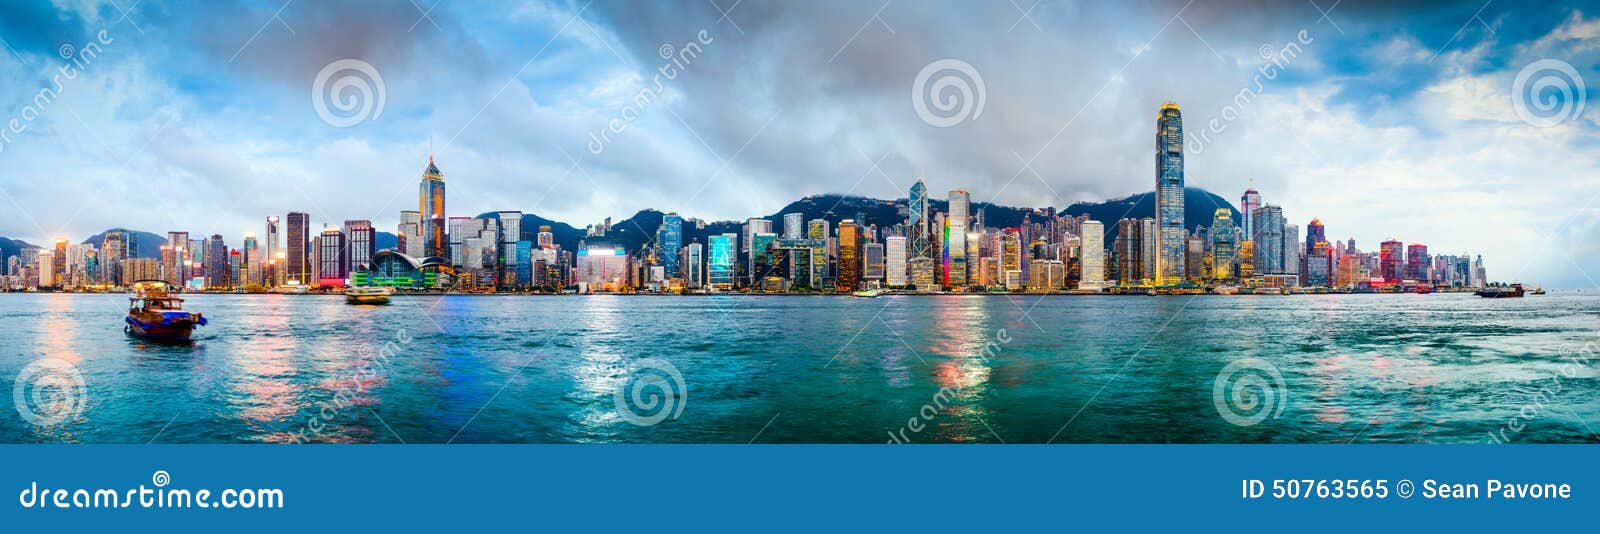 hong kong china skyline